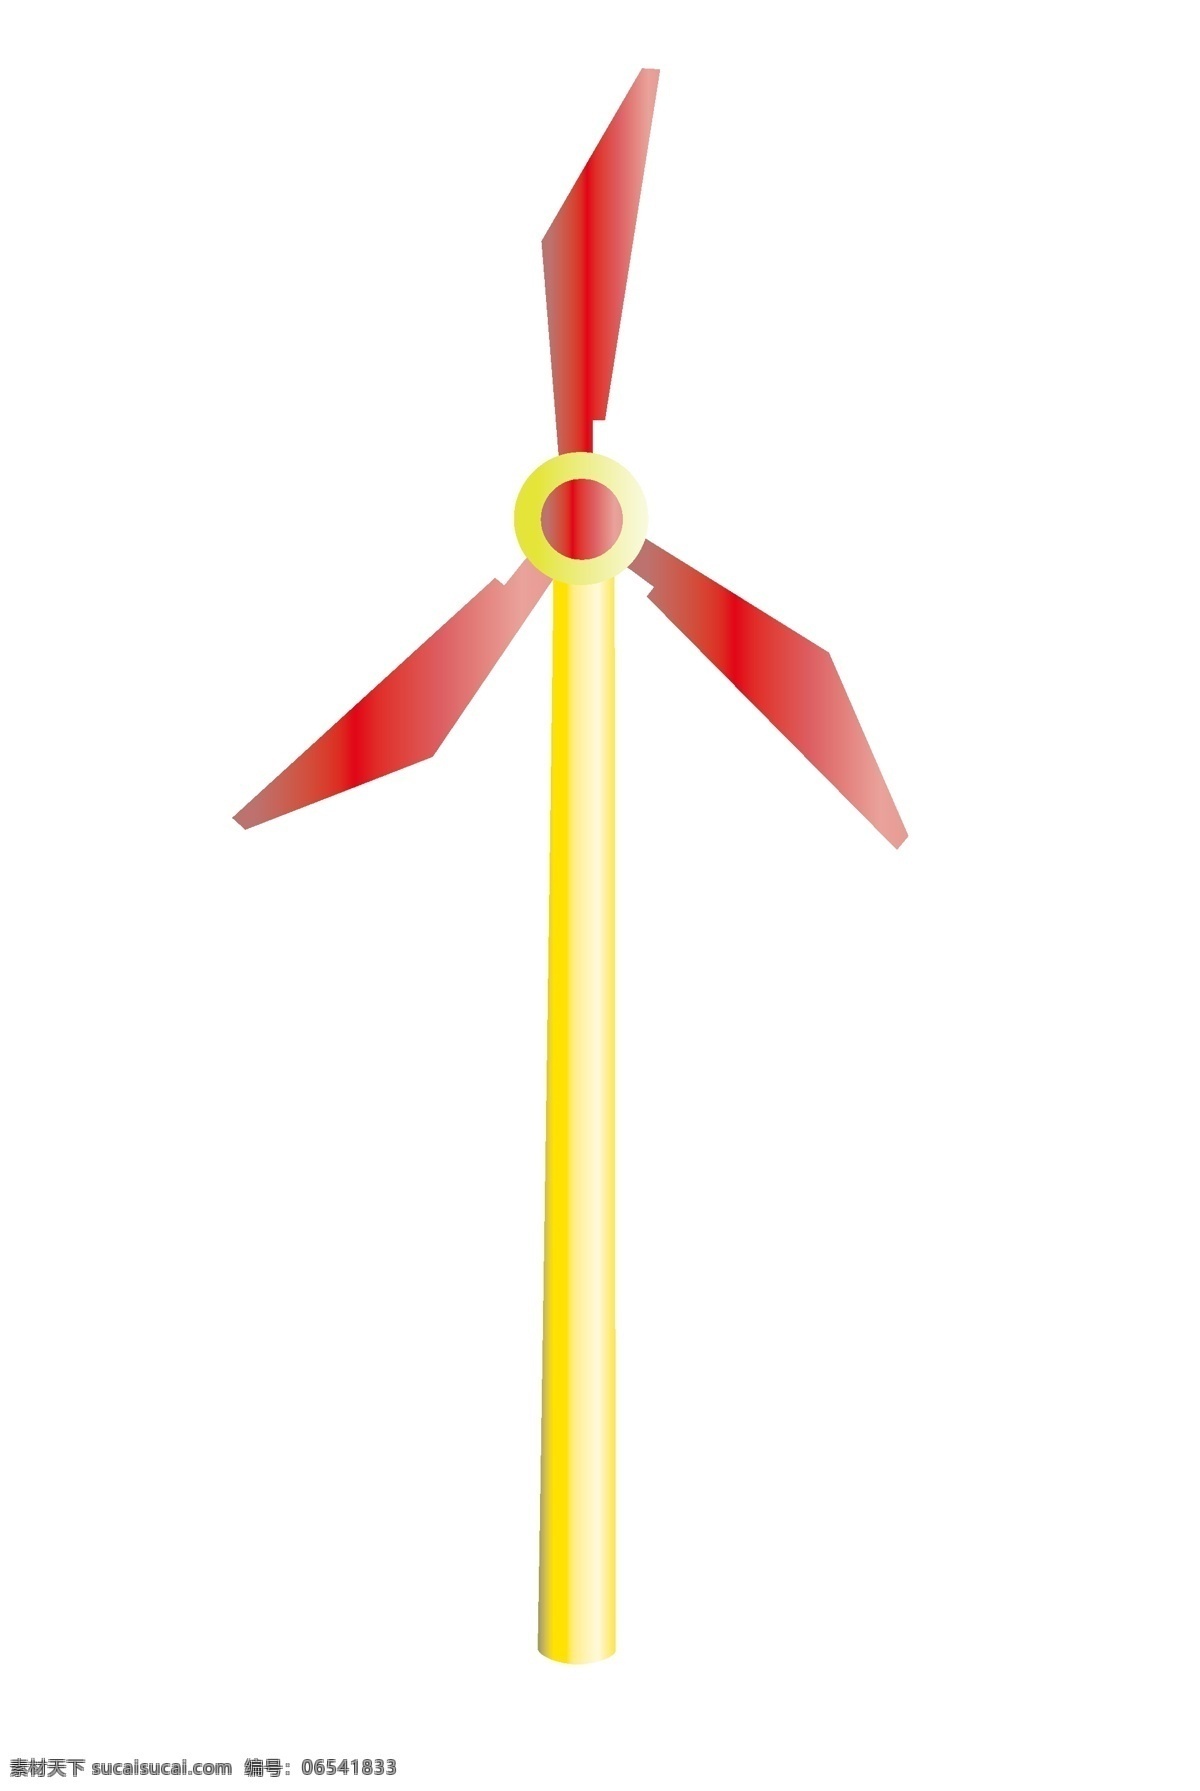 风车 发电 卡通 插画 卡通插画 风车插画 玩具插画 风车玩具 风车模型 风车发电插画 红色的风车